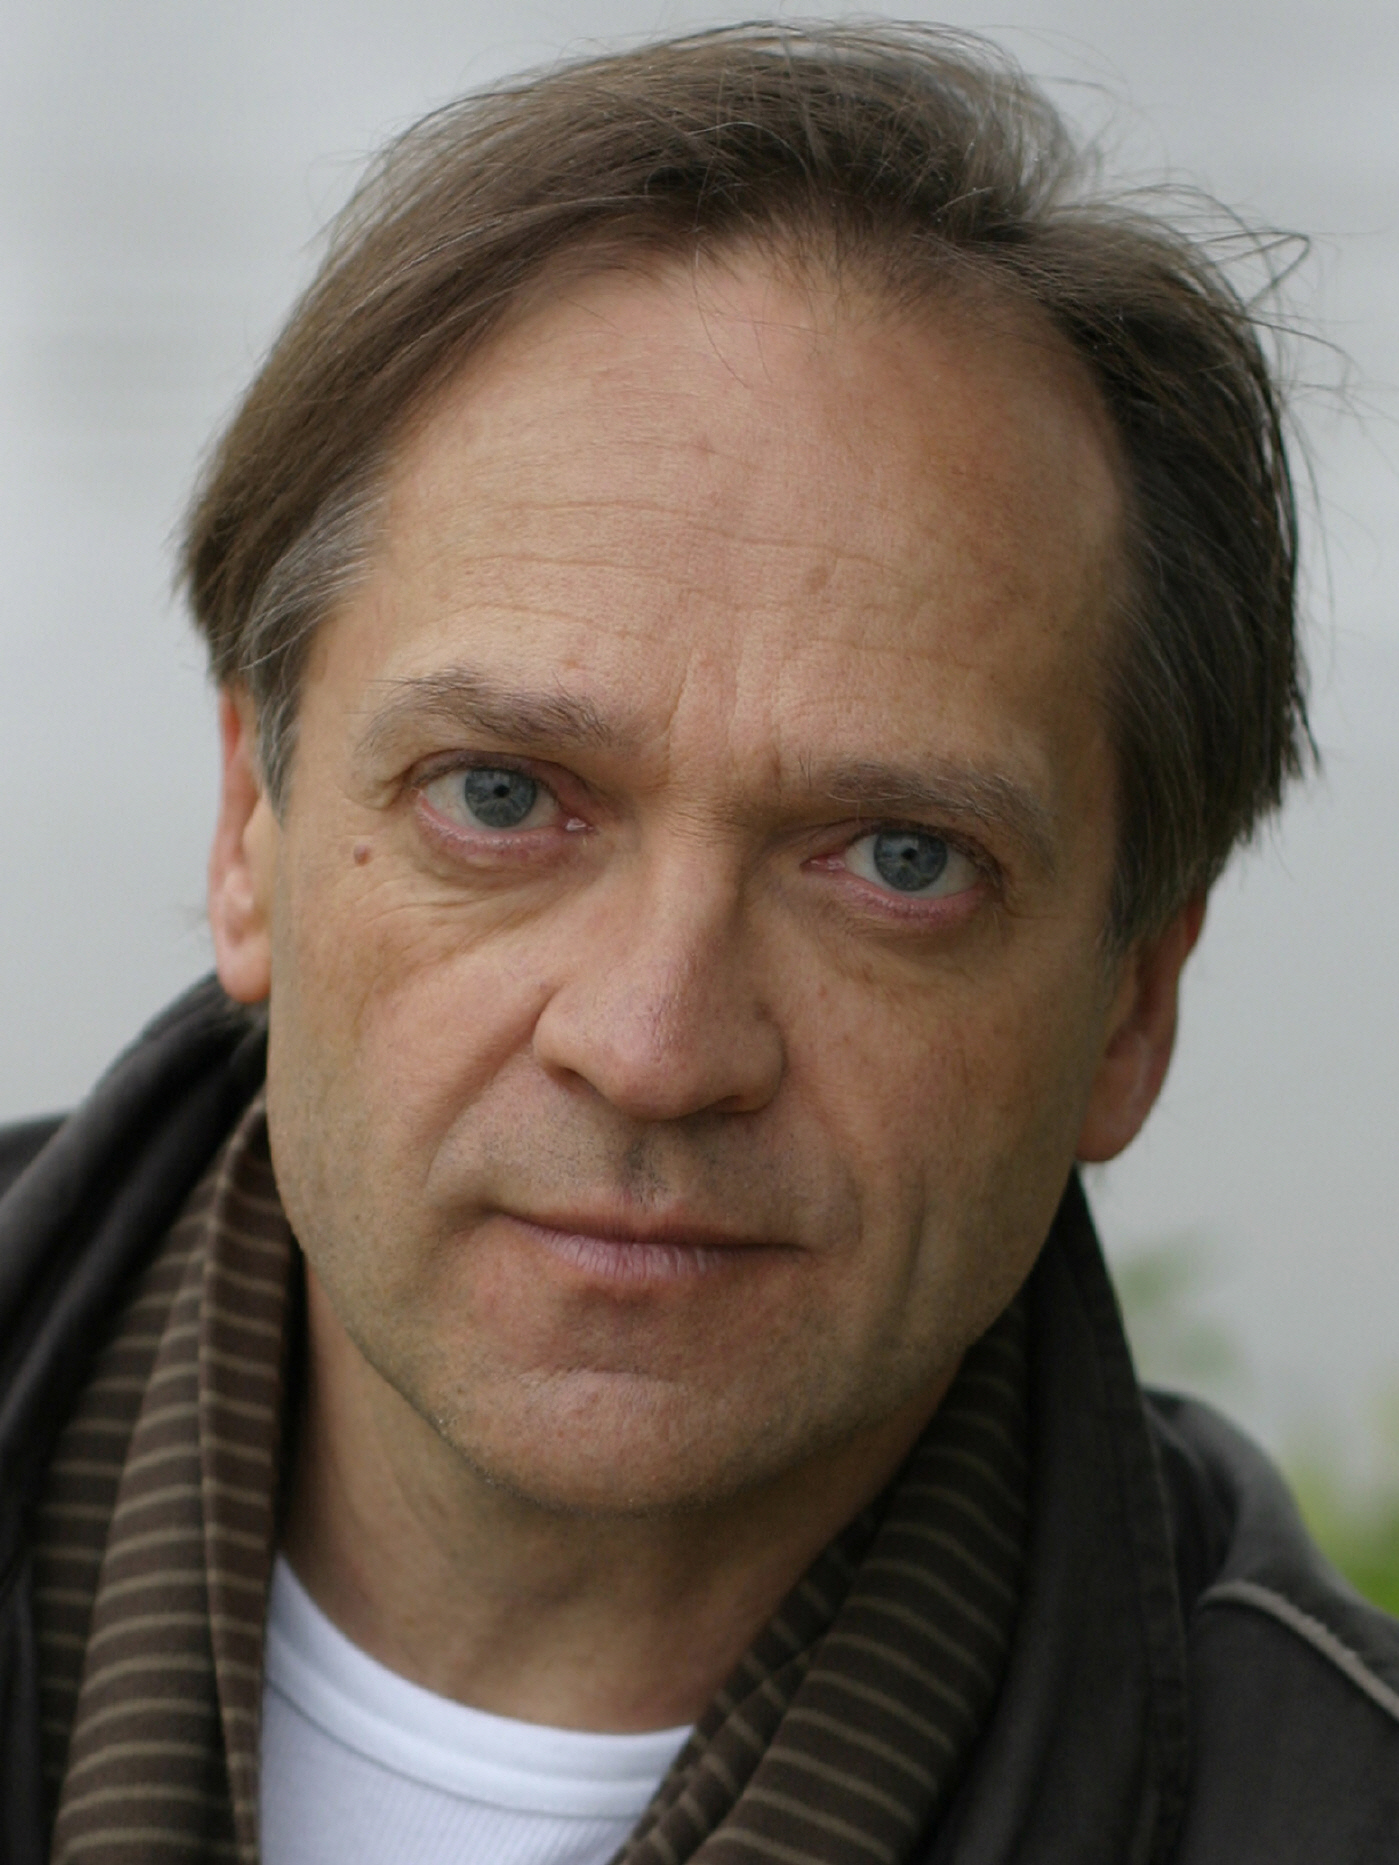 <b>Martin Leßmann</b>, Schauspieler und Regisseur, lebt seit mehr als 25 Jahren in ... - m.lemann140-kopieas